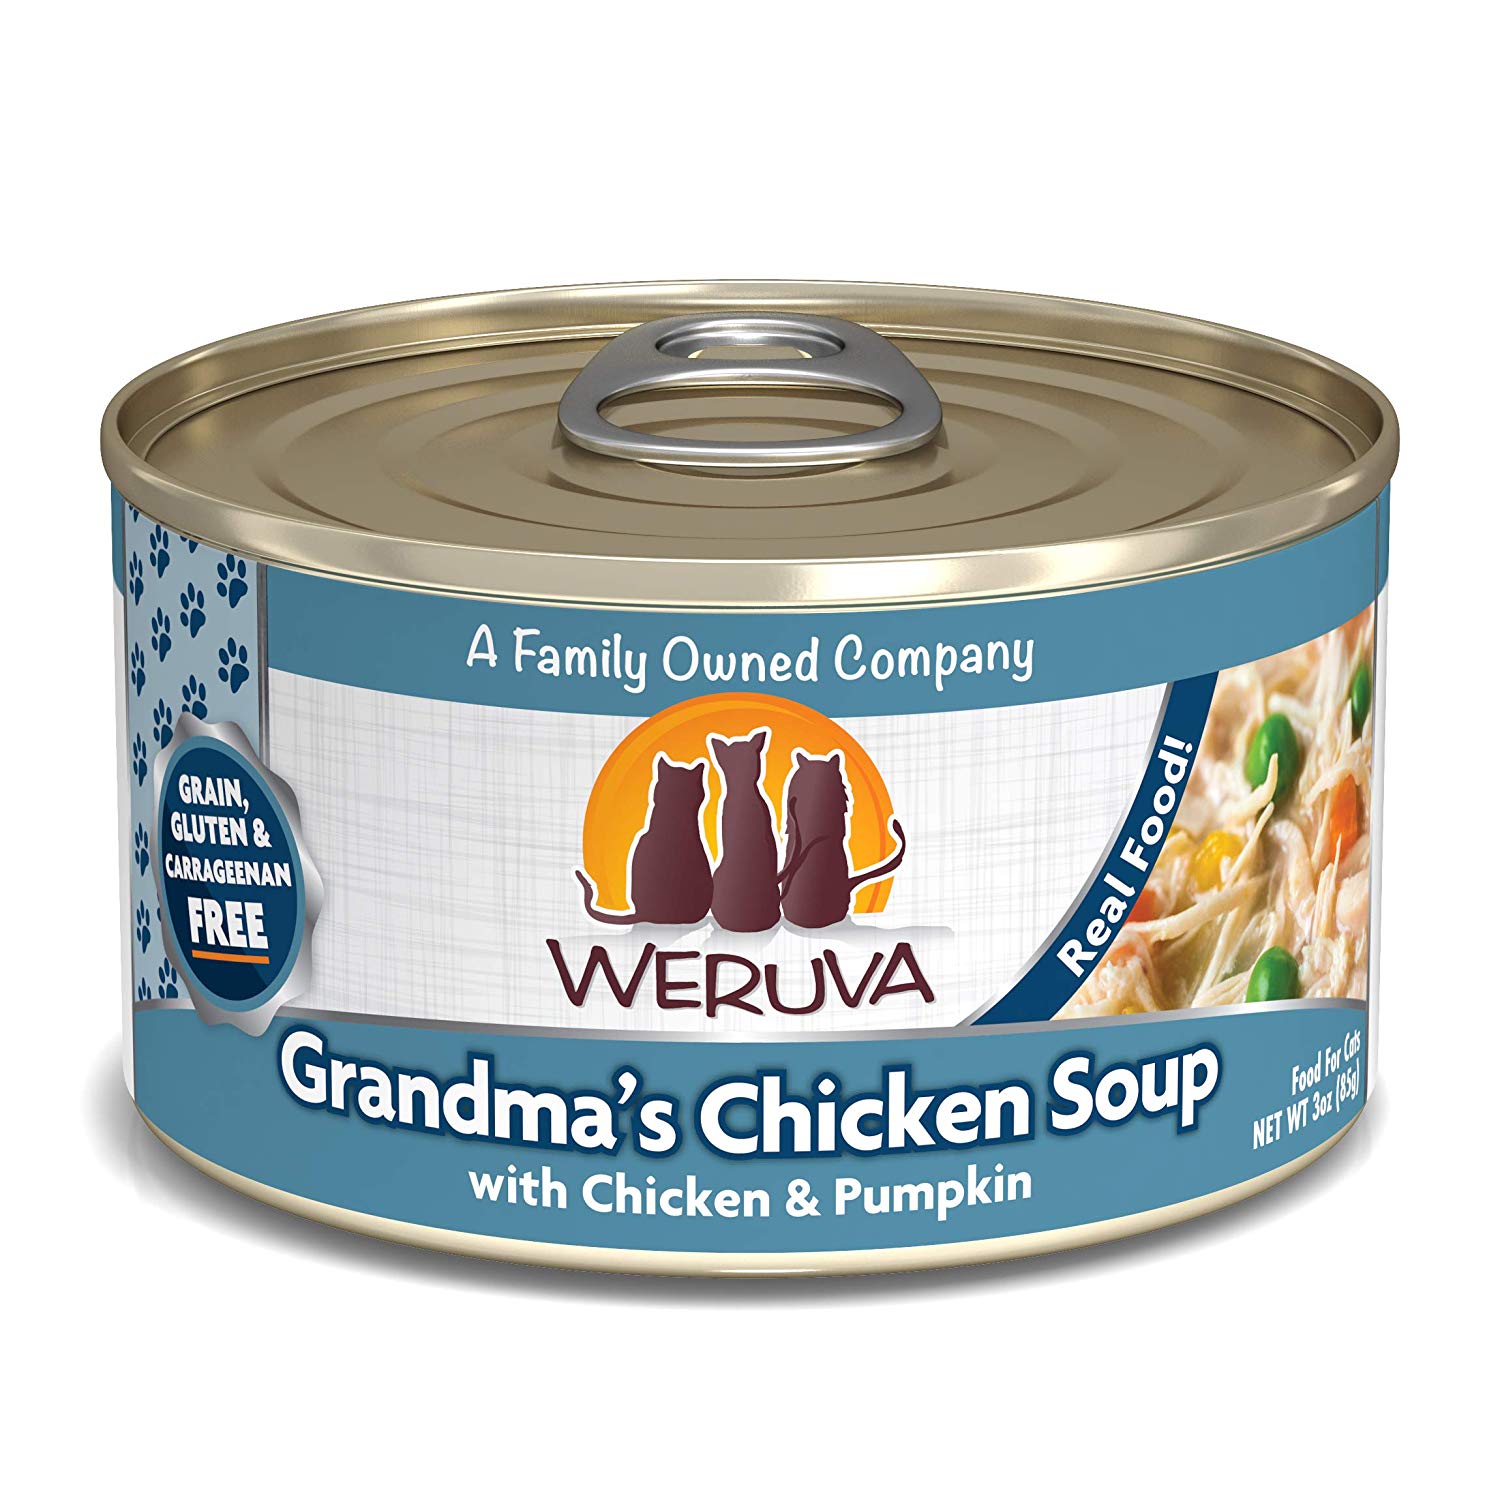 唯美味主食貓罐-元氣雞湯肉
WERUVA-Grandma s Chicken Soup With Chicken and Pumpkin